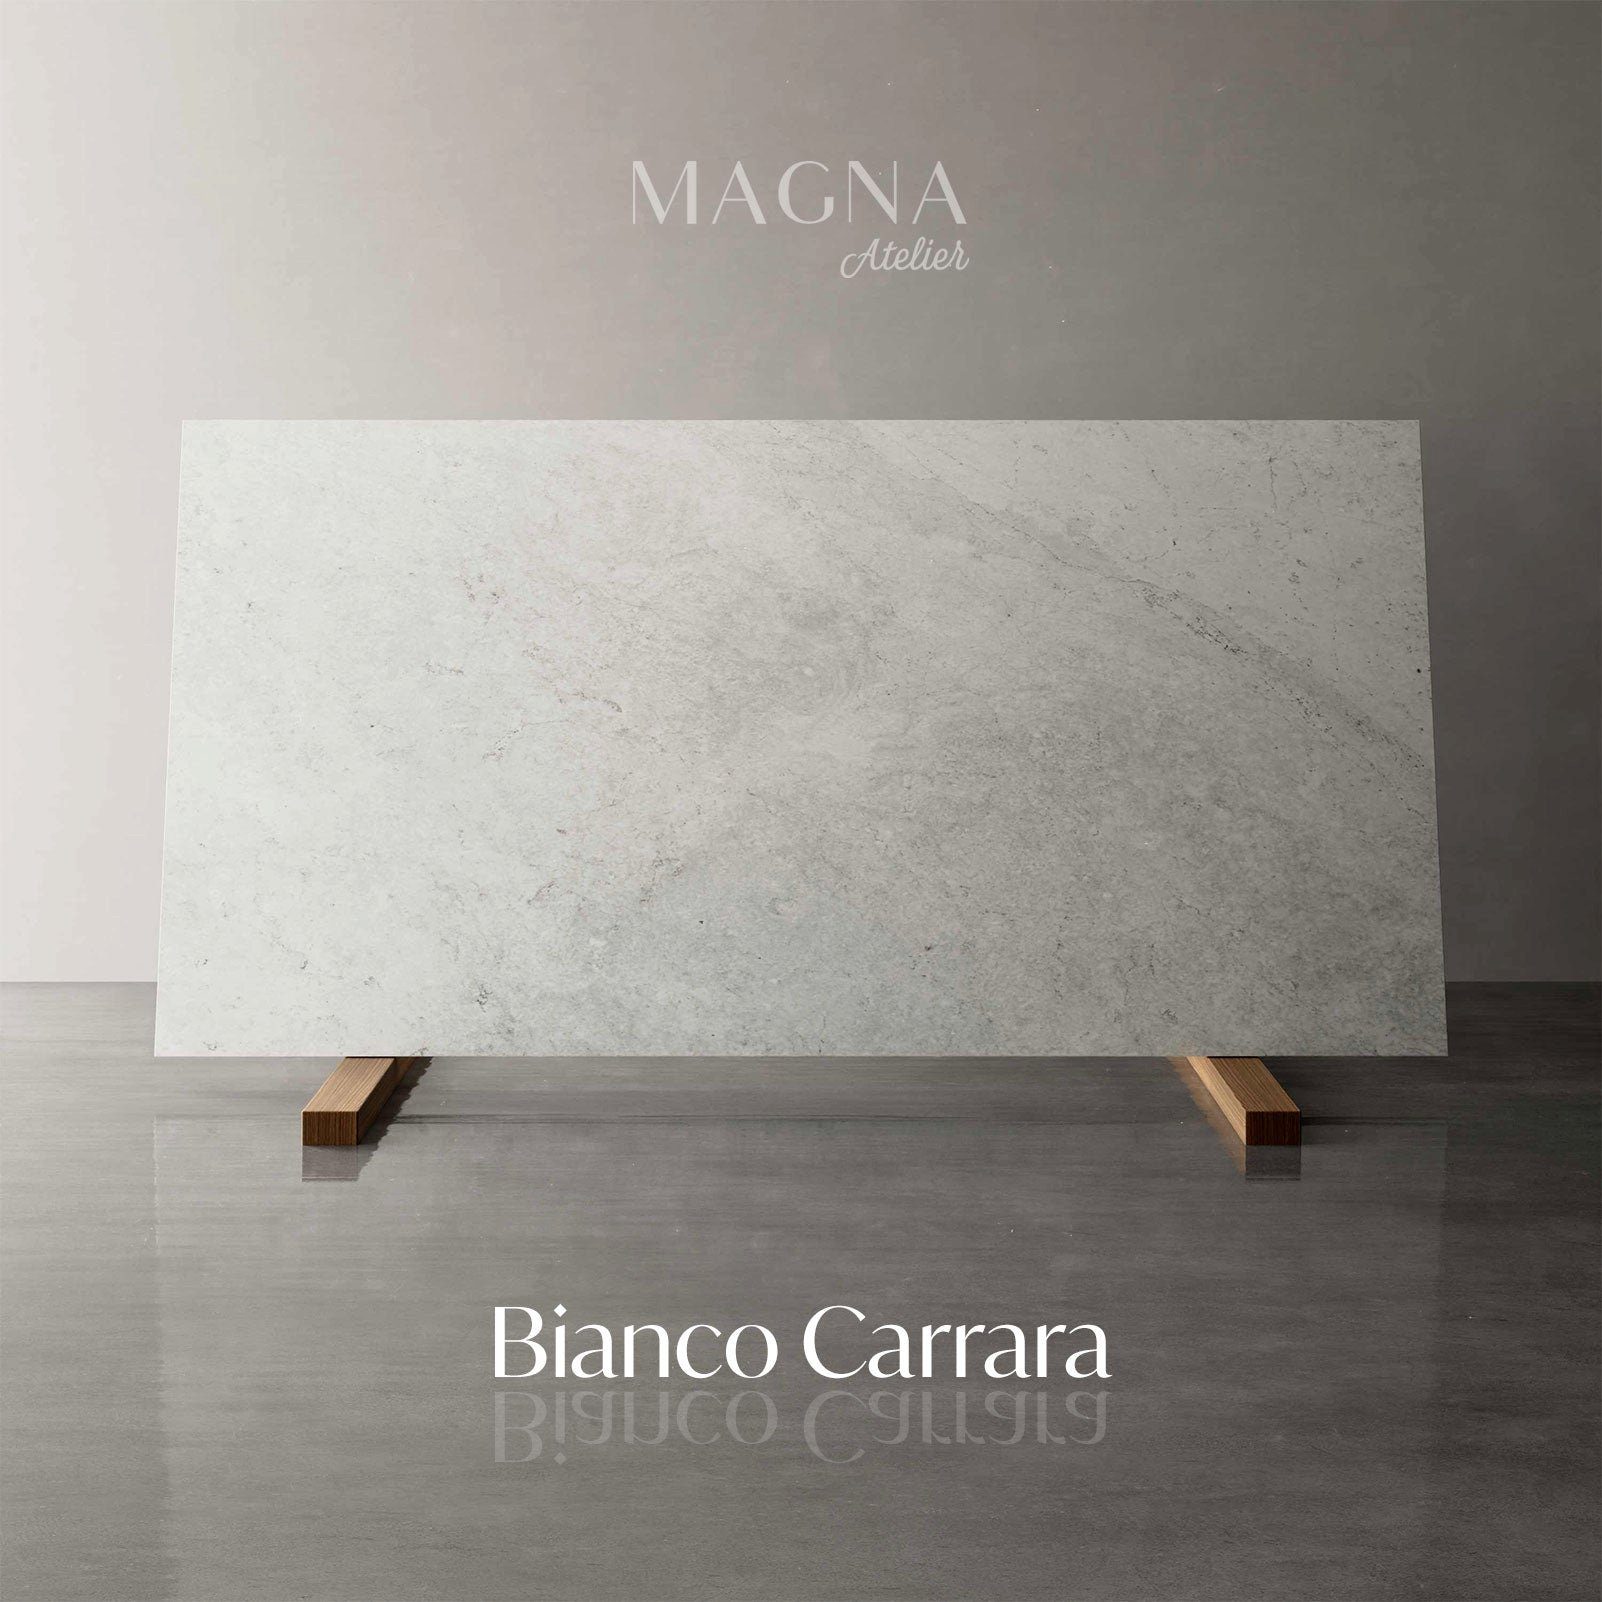 Bianco mit ALTO Metallgestell, MAGNA 140x70x70-115cm Schreibtisch ECHTEM PALO höhenverstellbar, Schreibtisch Atelier Carrara MARMOR,